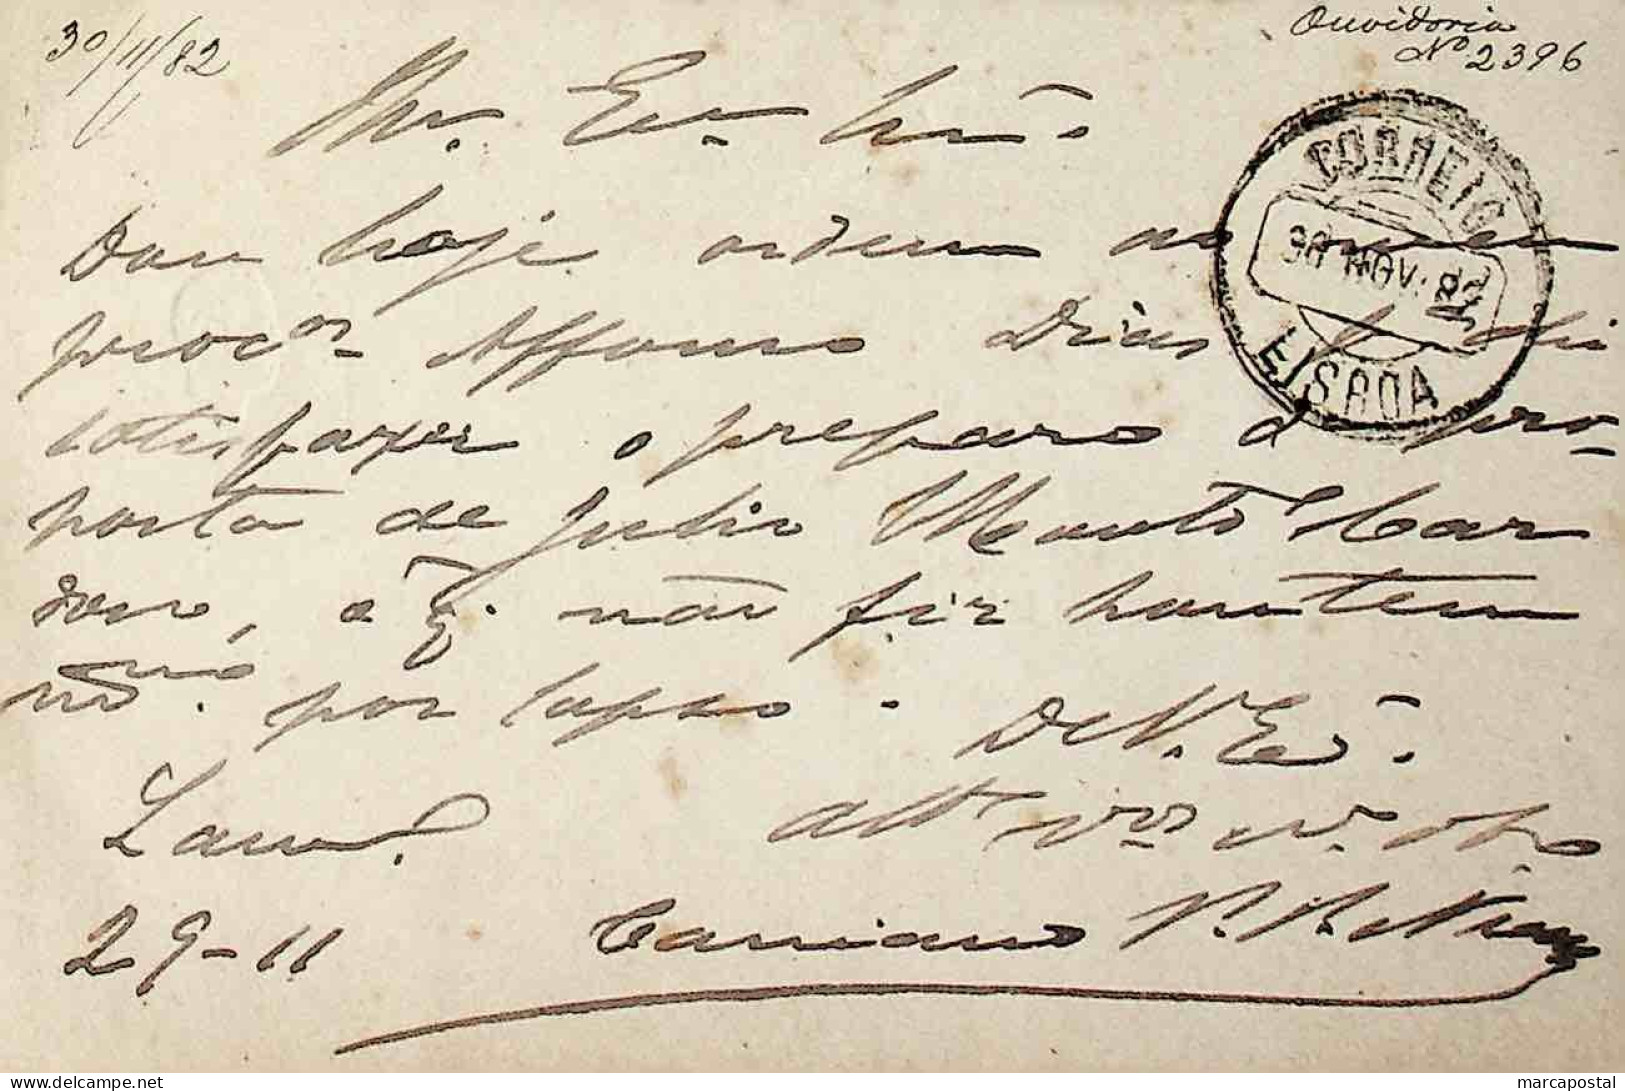 1882 Portugal Bilhete Postal Inteiro  D. Luís Fita Direita 10 R. Castanho-Vermelho Enviado De Lamego (?) Para Lisboa - Ganzsachen